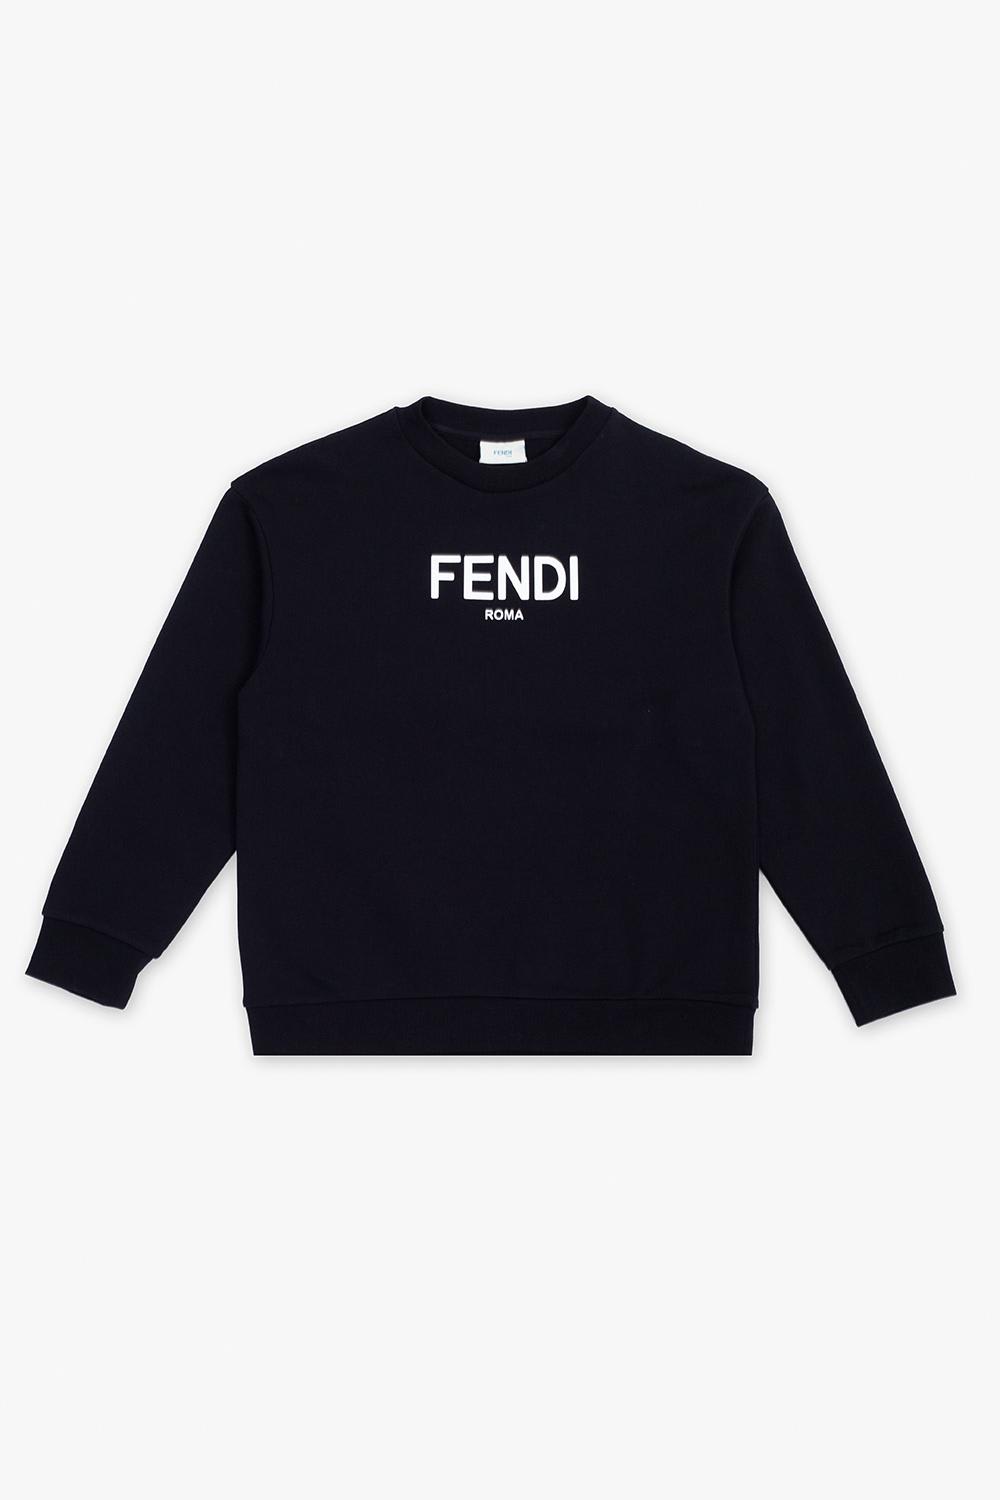 Fendi Sweatshirt With Logo